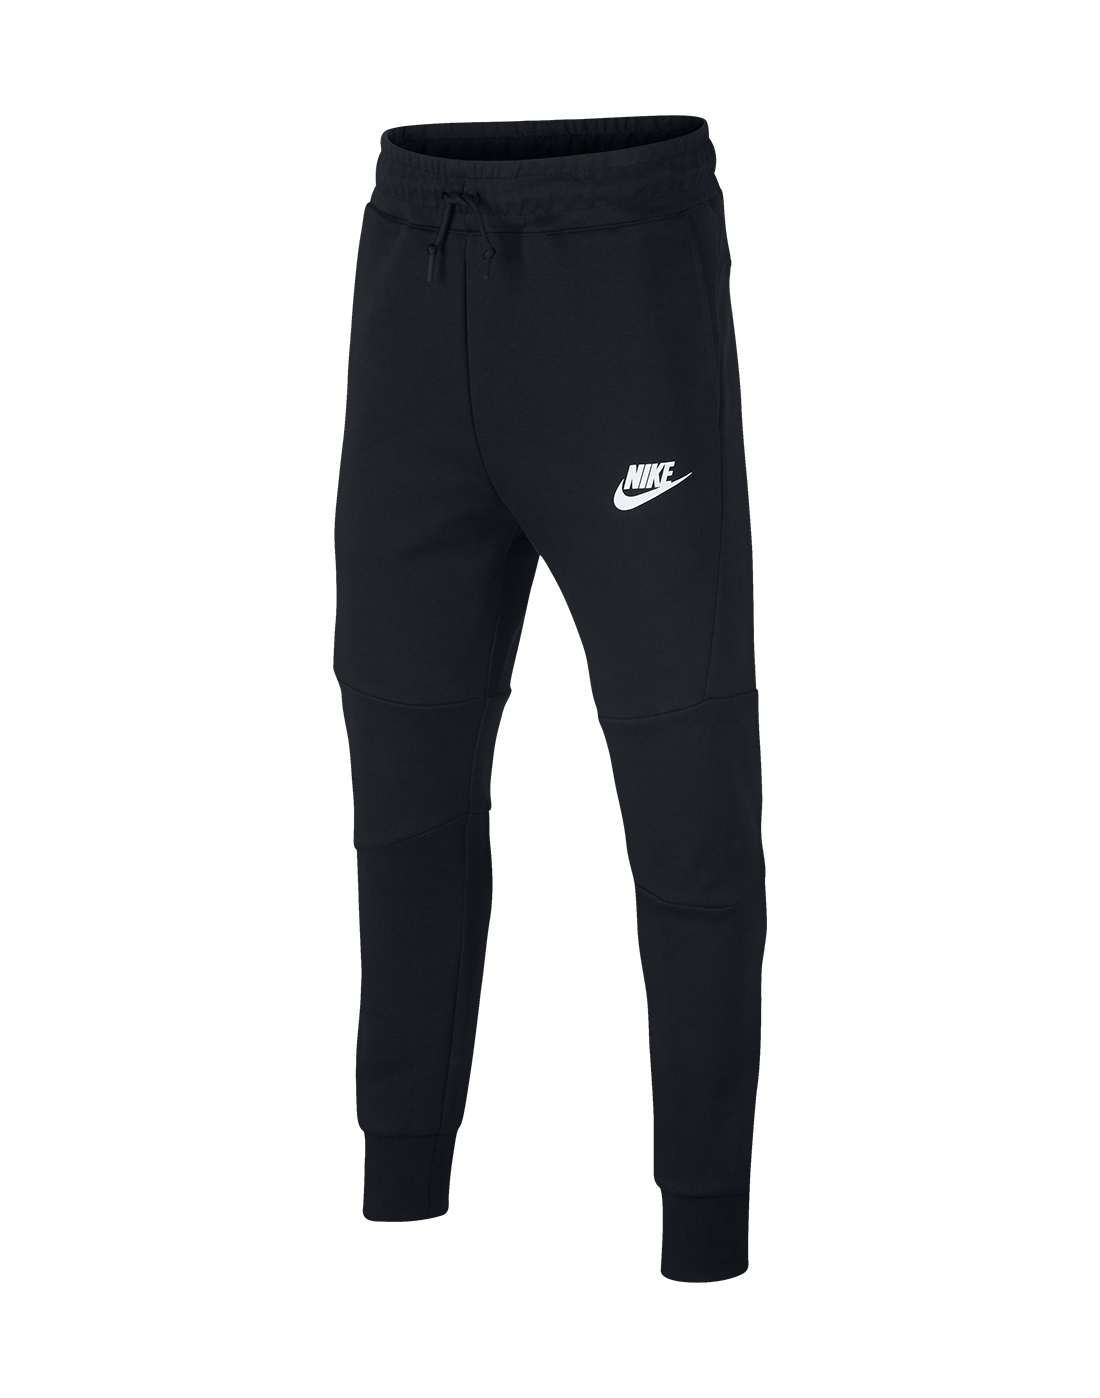 Boy's Black Nike Tech Fleece Pants | Life Style Sports